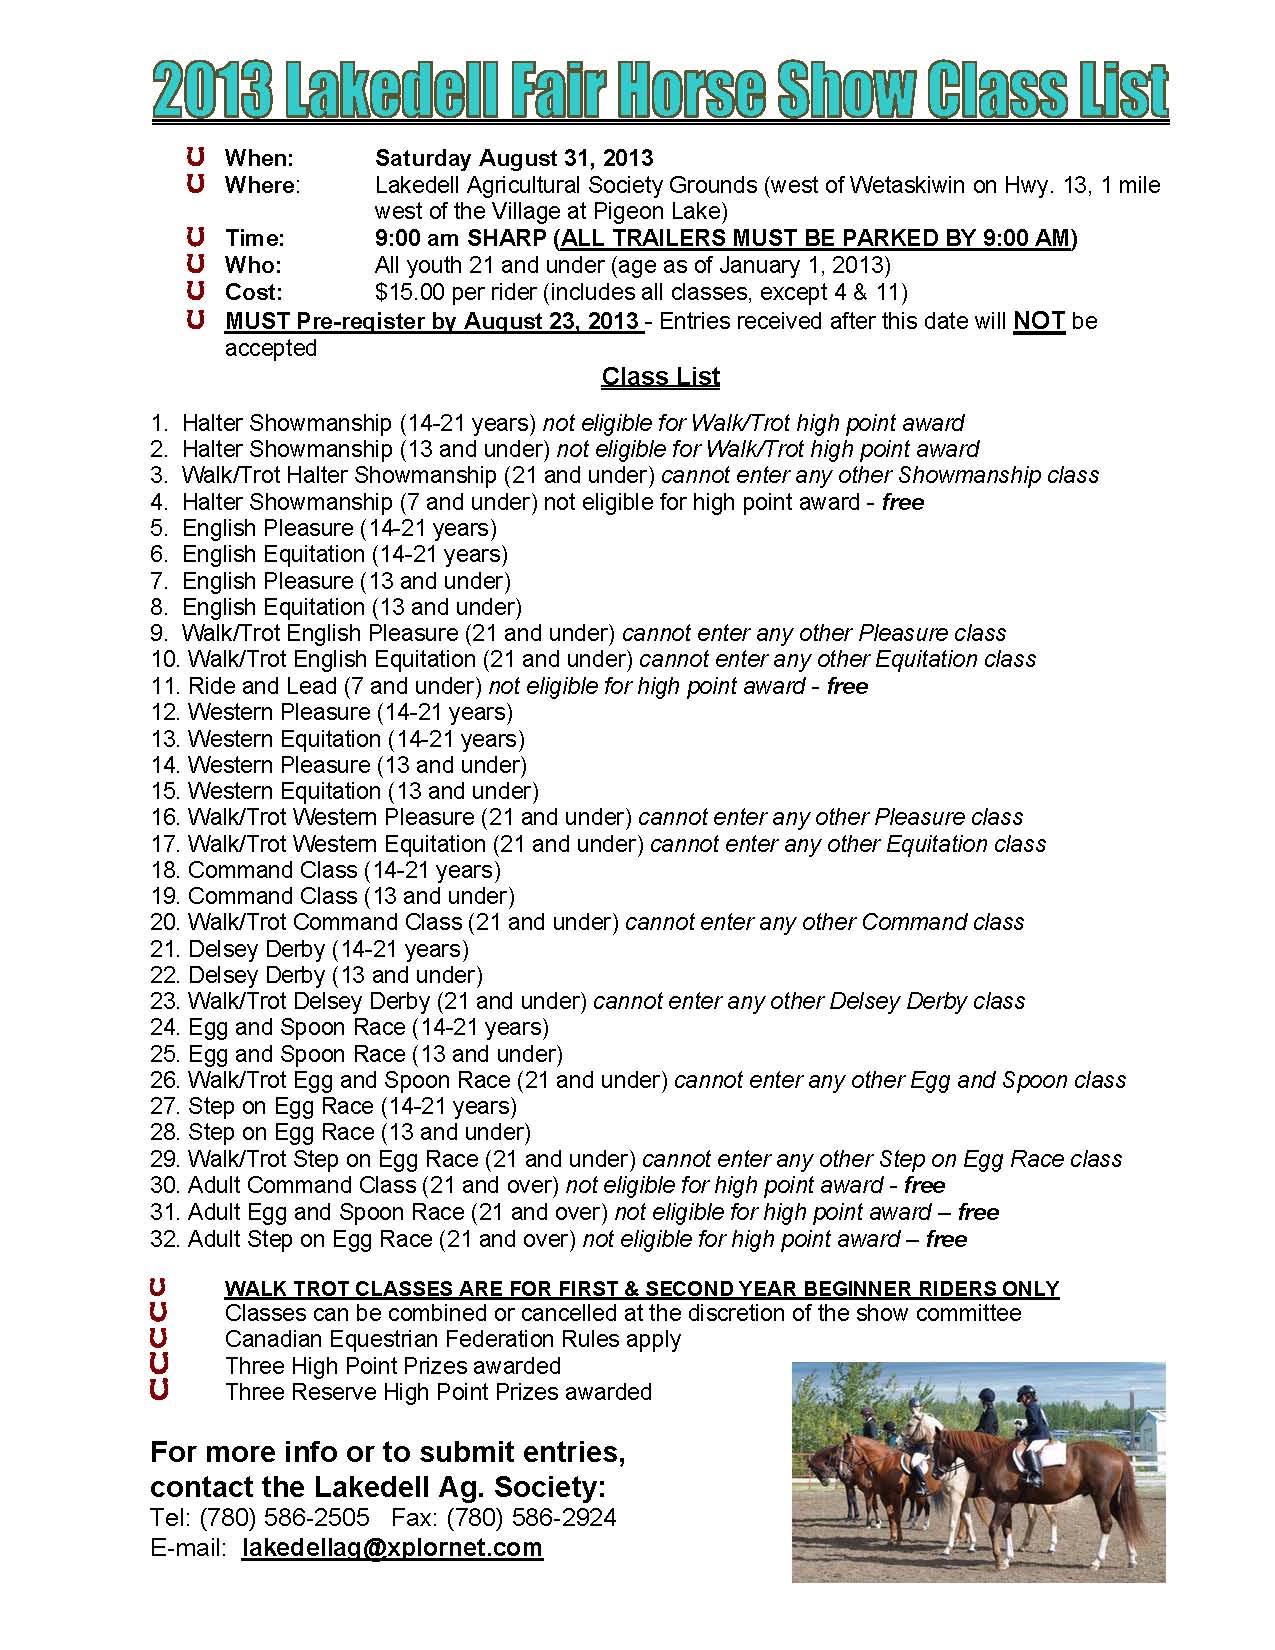 horse show class list 2013